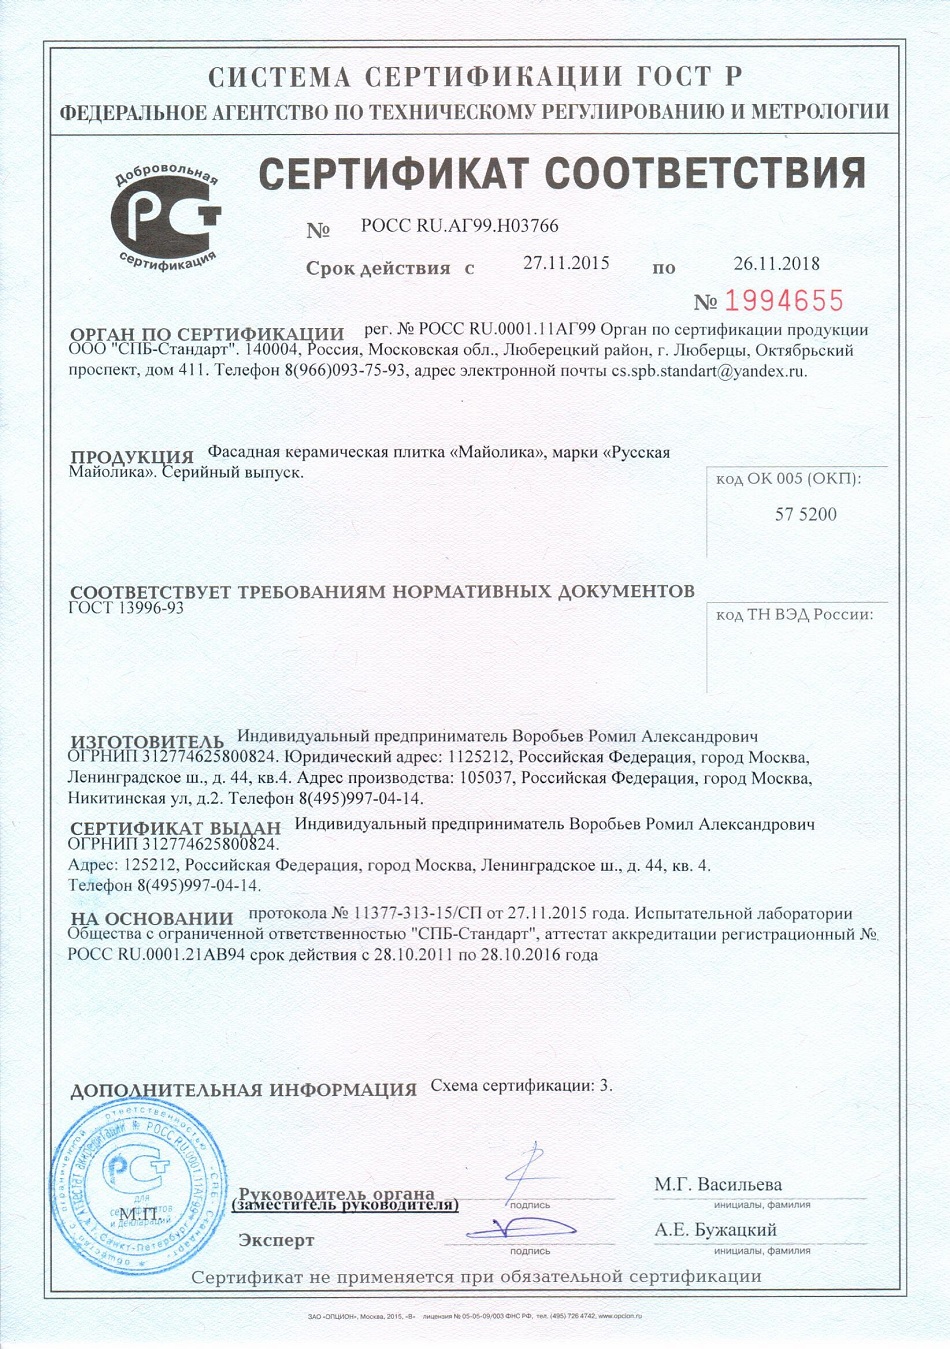 Сертификат на морозоустойчивость фасадной майолики Русская Майолика